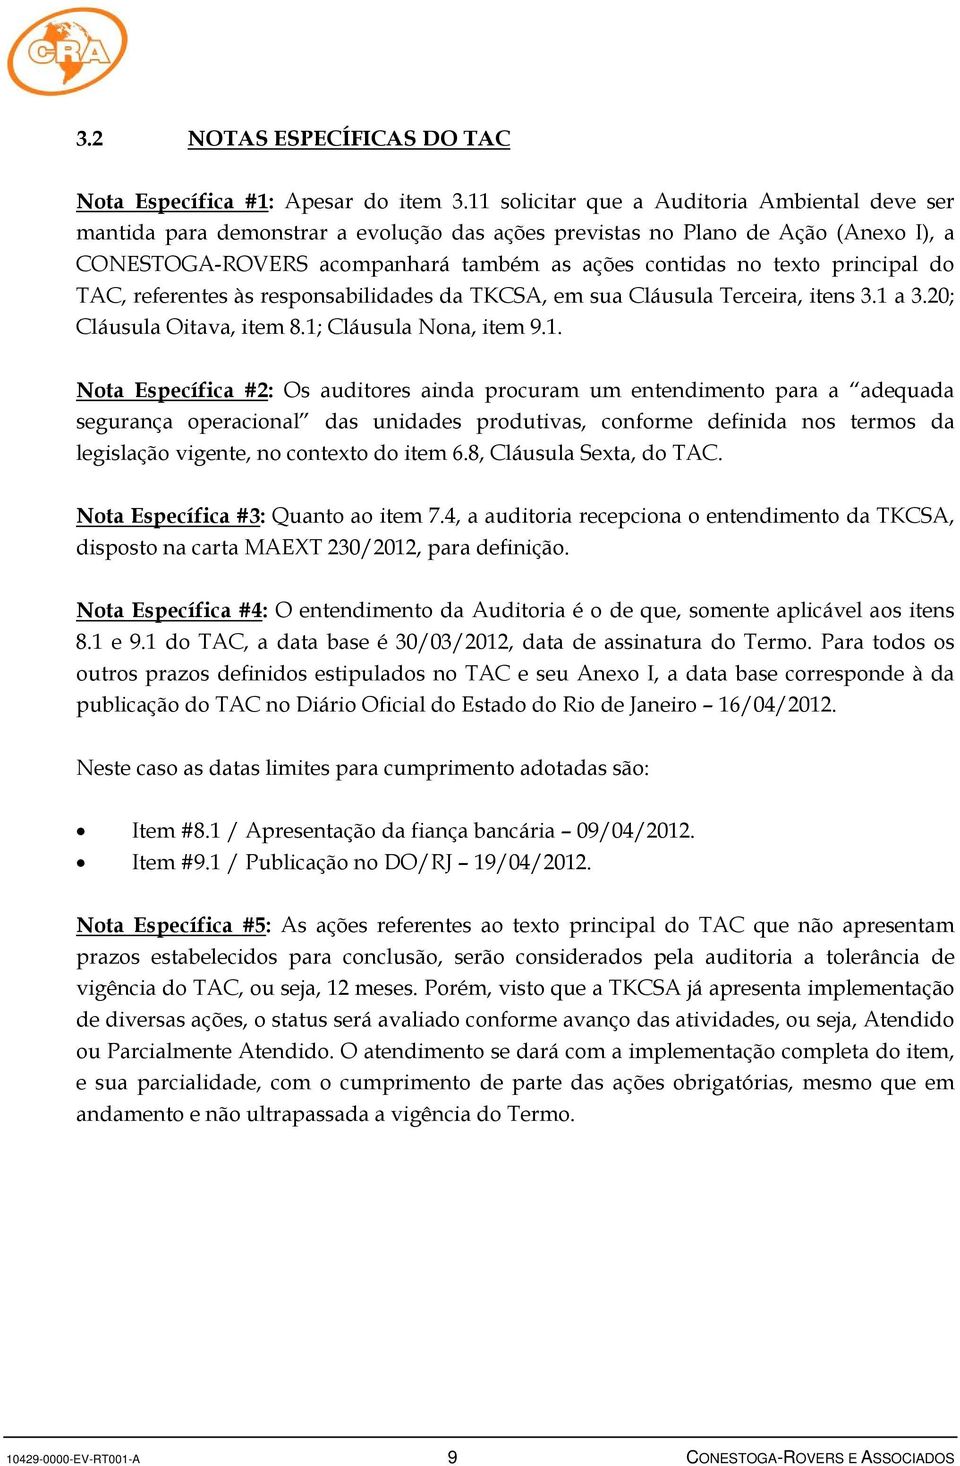 principal do, referentes às responsabilidades da TKCSA, em sua Cláusula Terceira, itens 3.1 